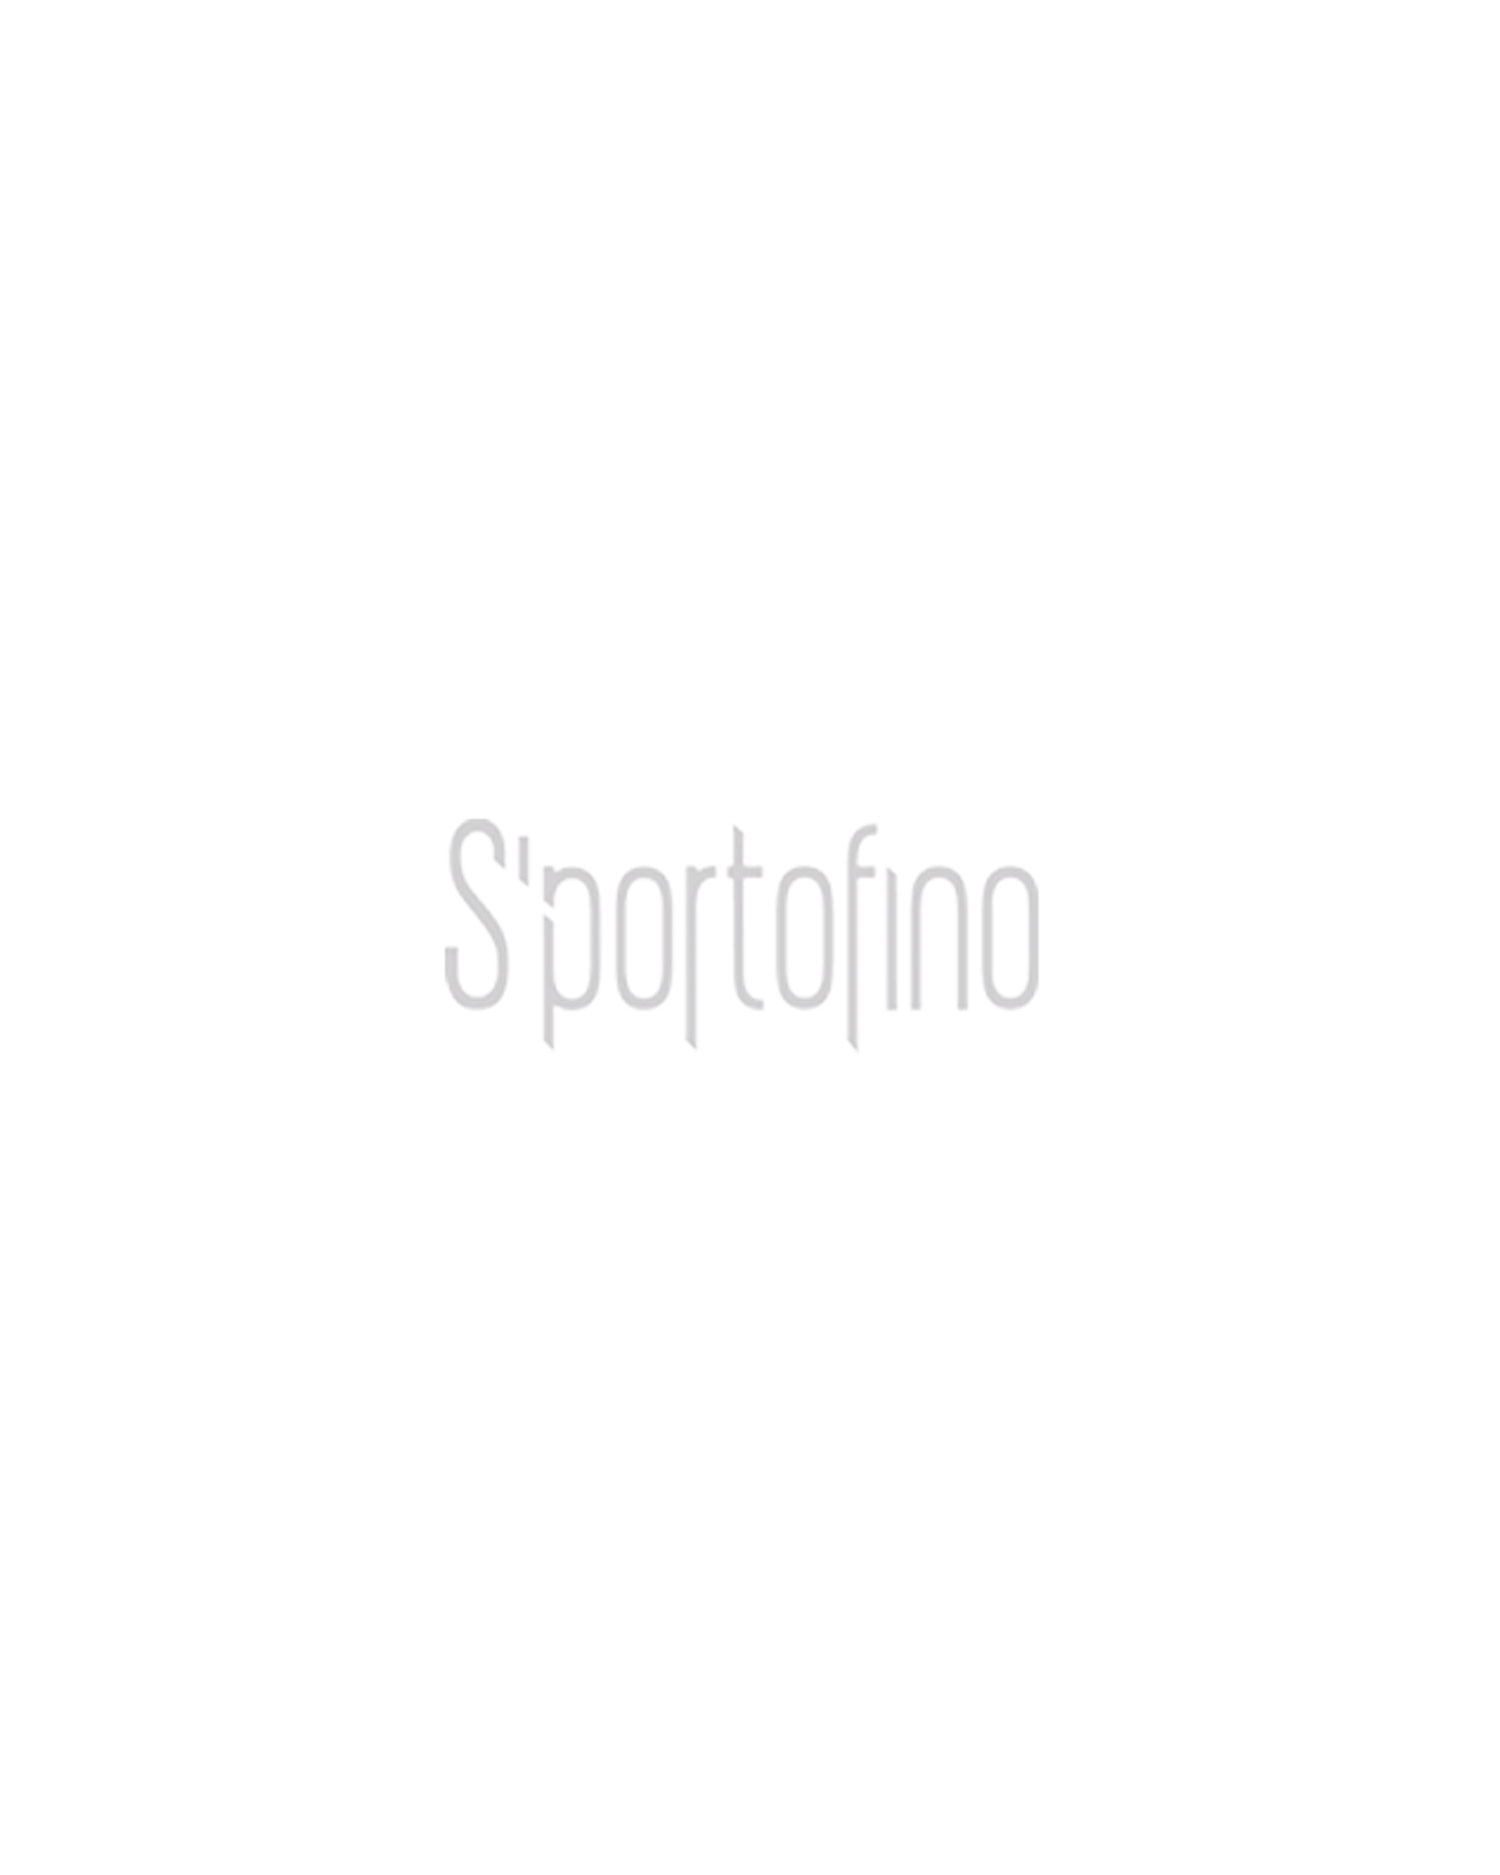 POLO GOLF RALPH LAUREN shorts | S'portofino